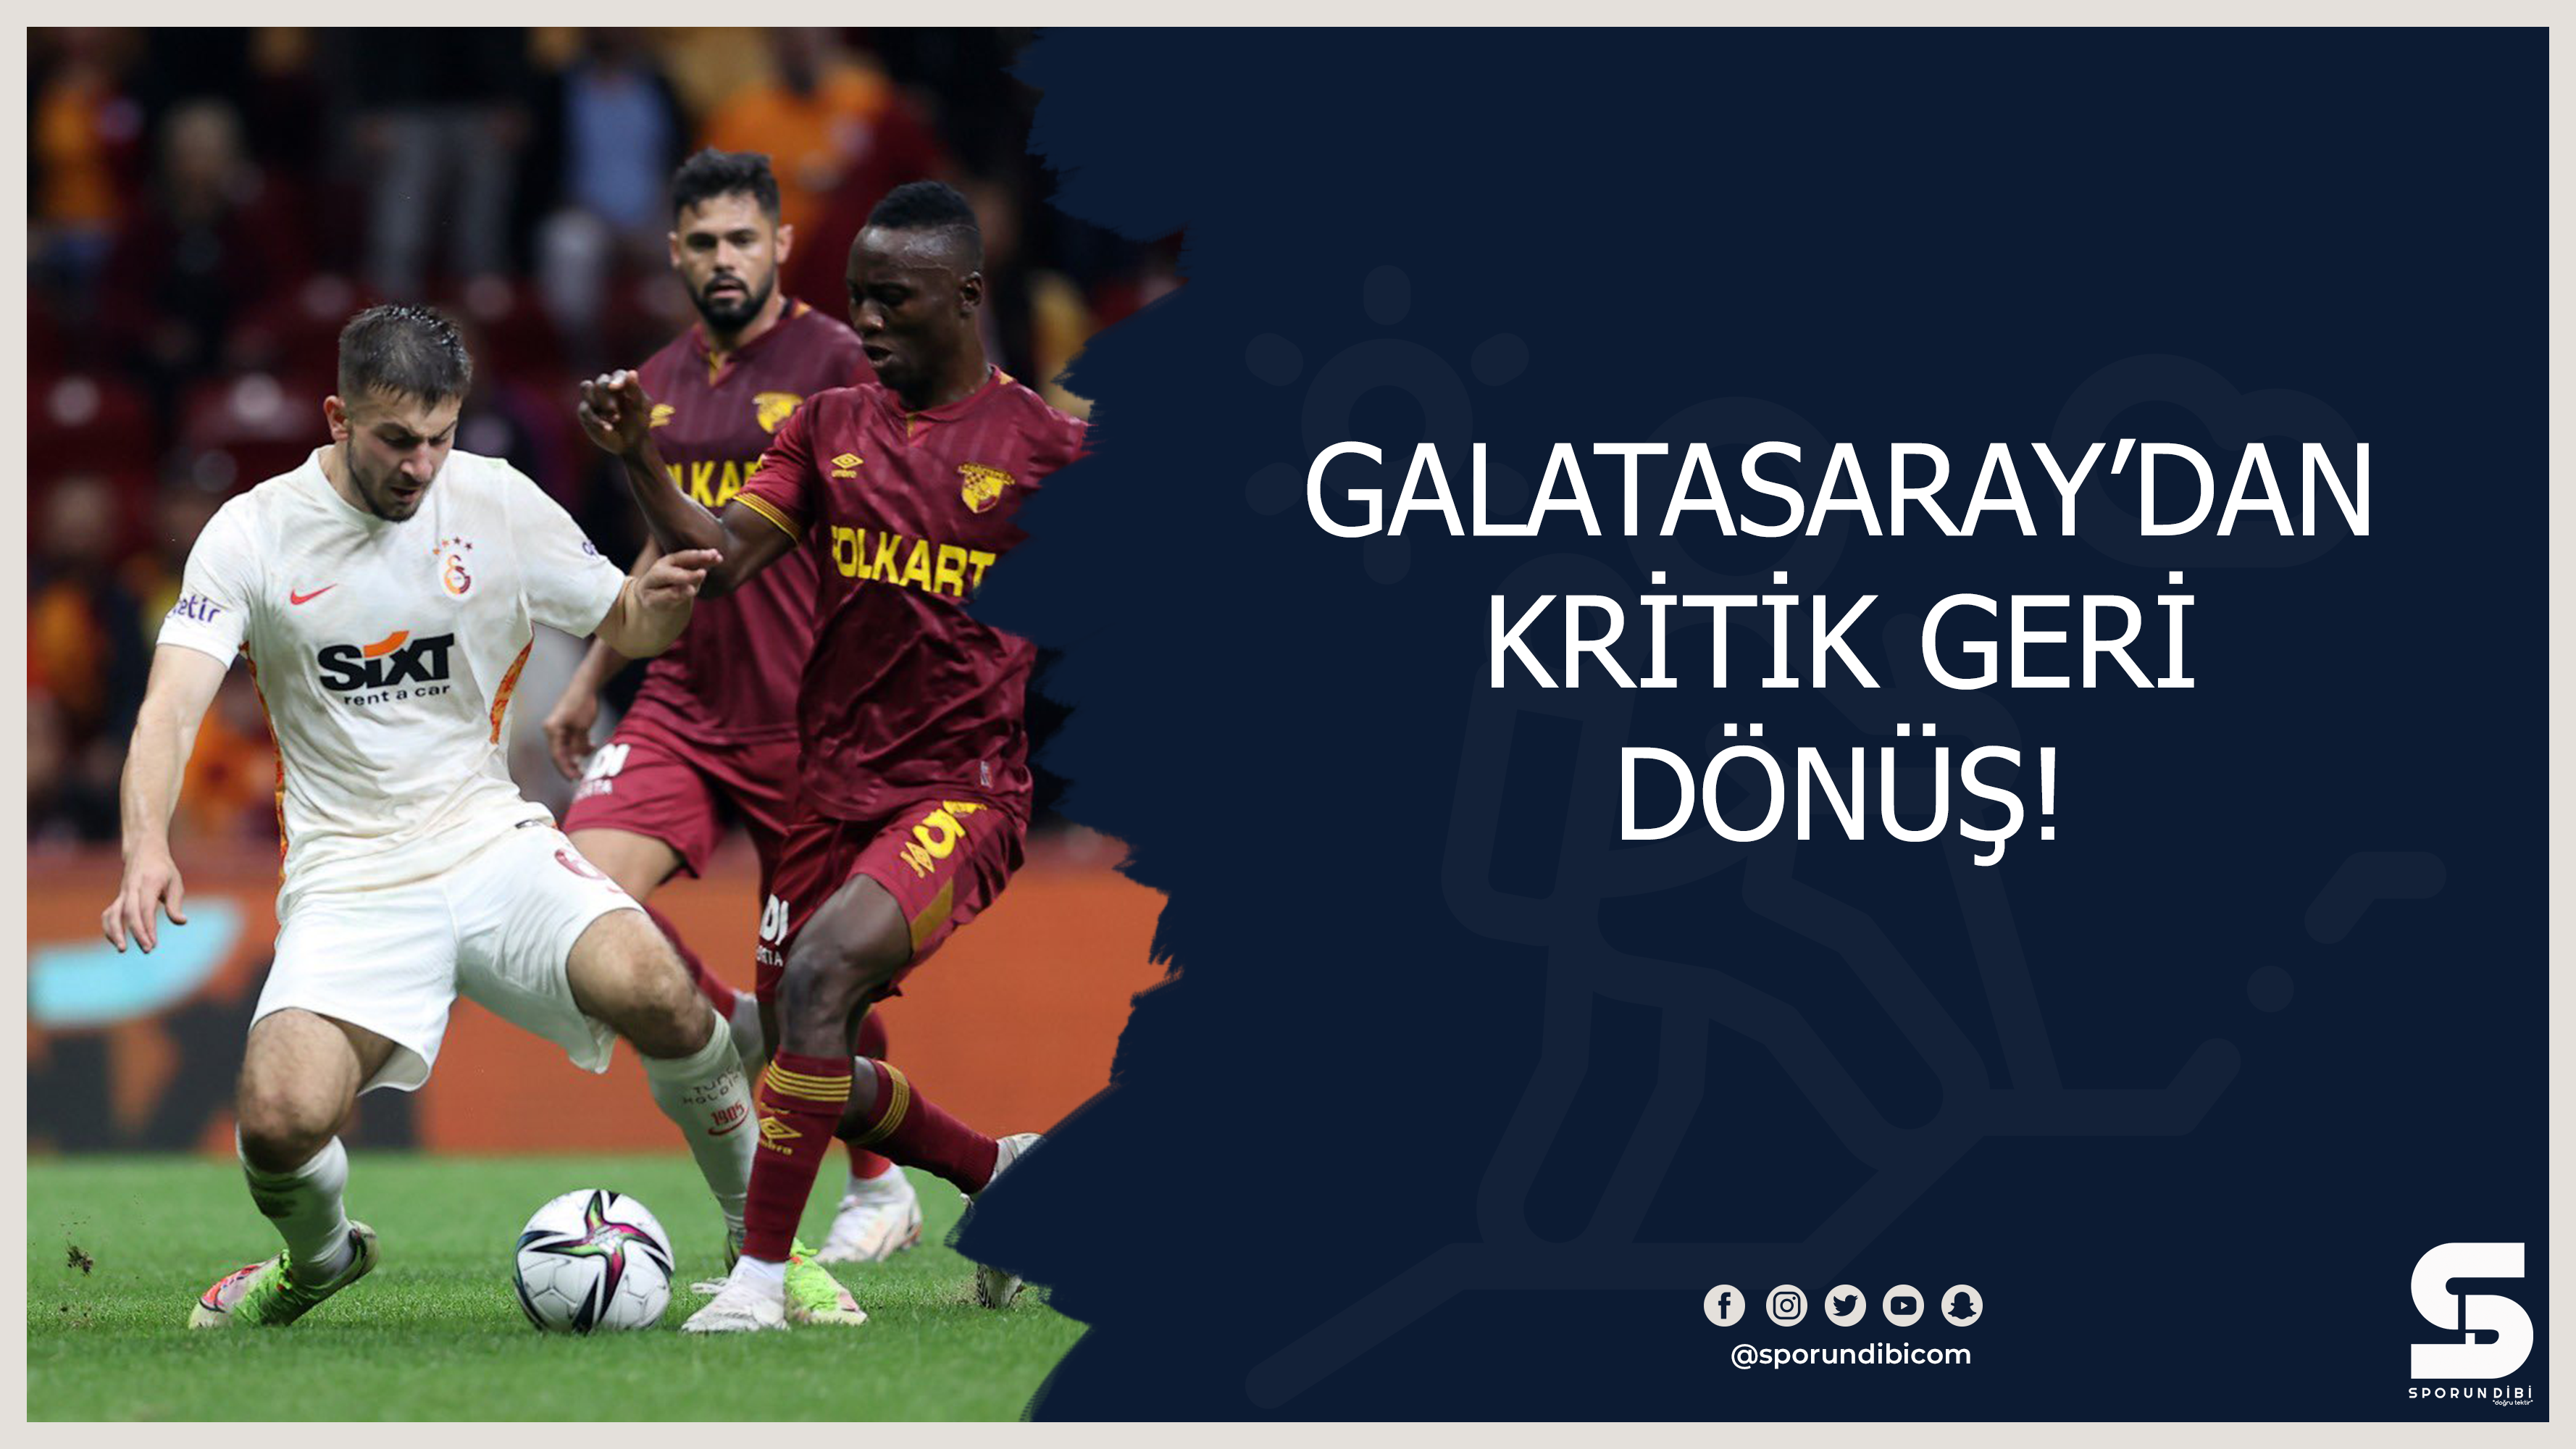 Galatasaray'dan kritik geri dönüş!